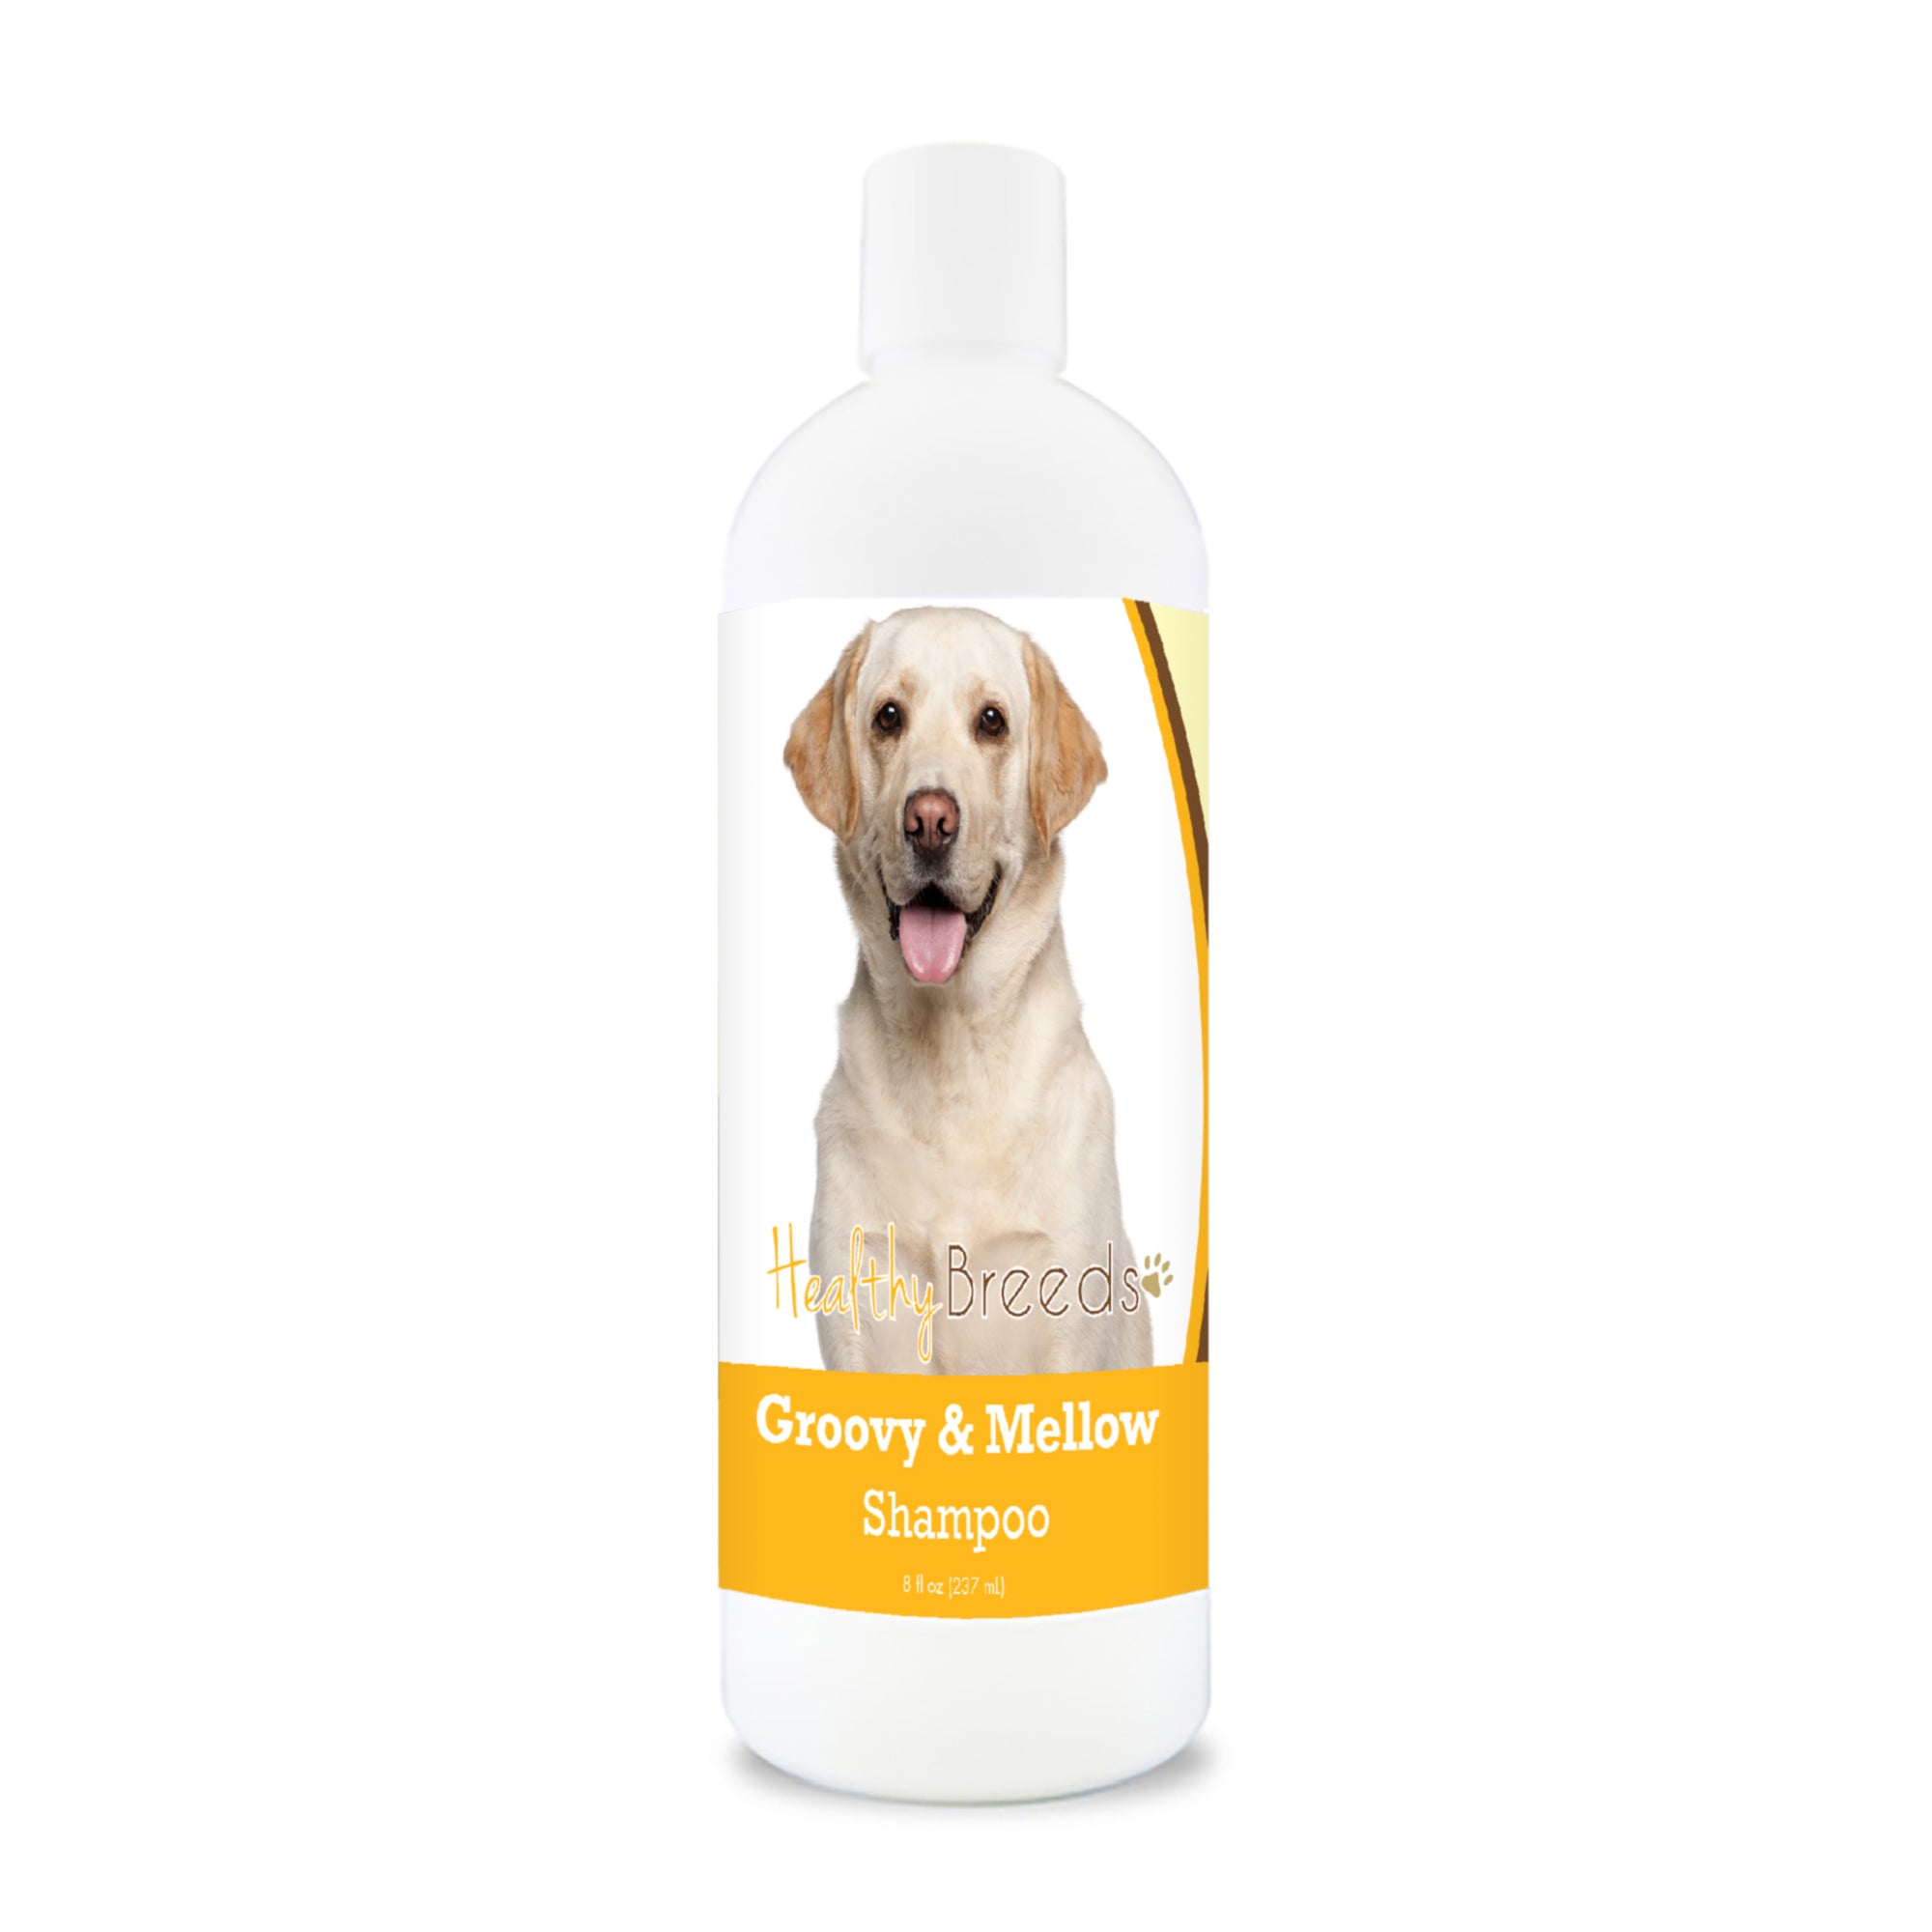 Labrador Retriever Groovy & Mellow Shampoo 8 oz